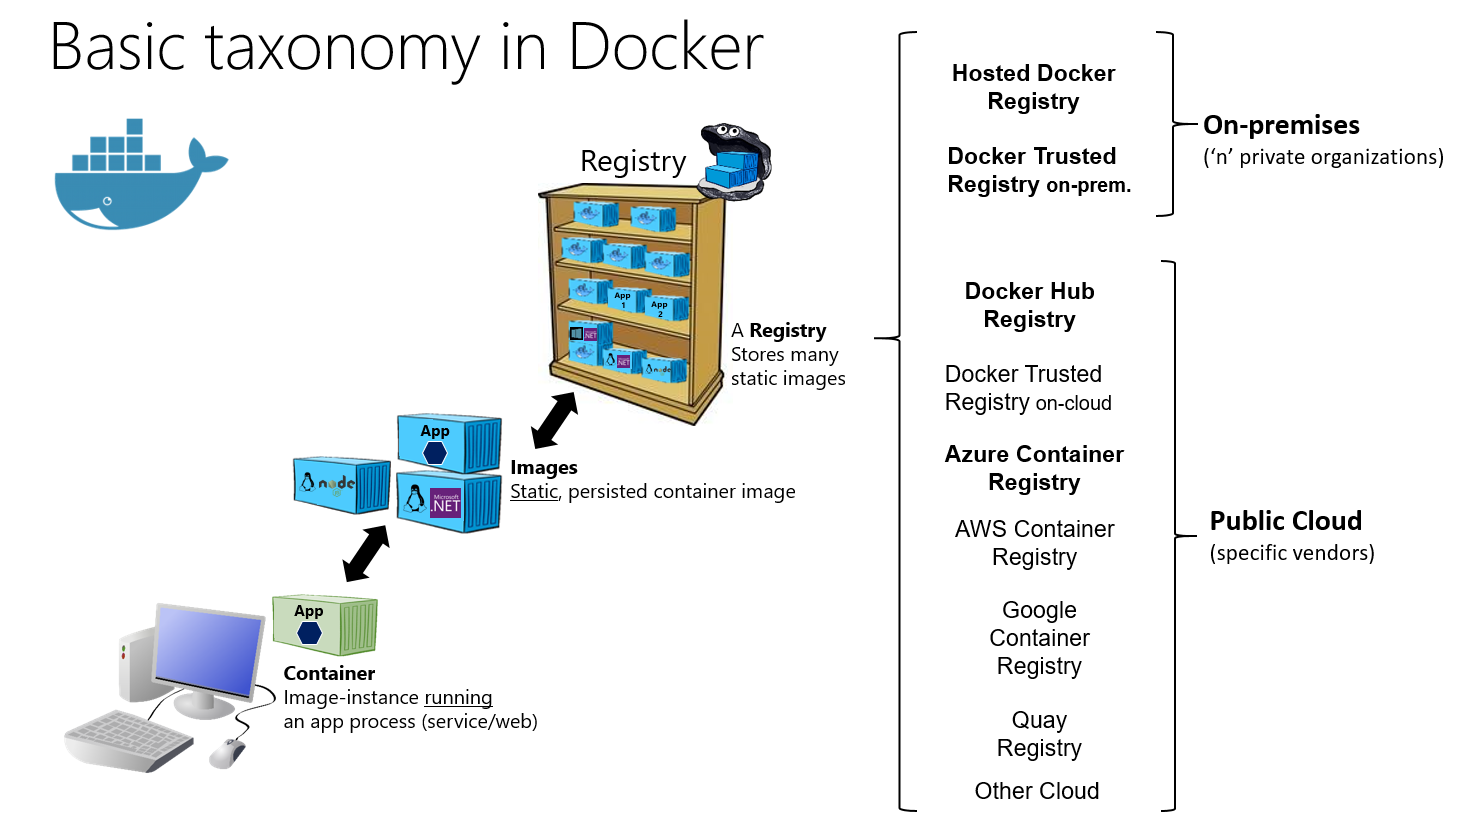 容器、映像和登錄的基本 Docker 分類法資訊圖